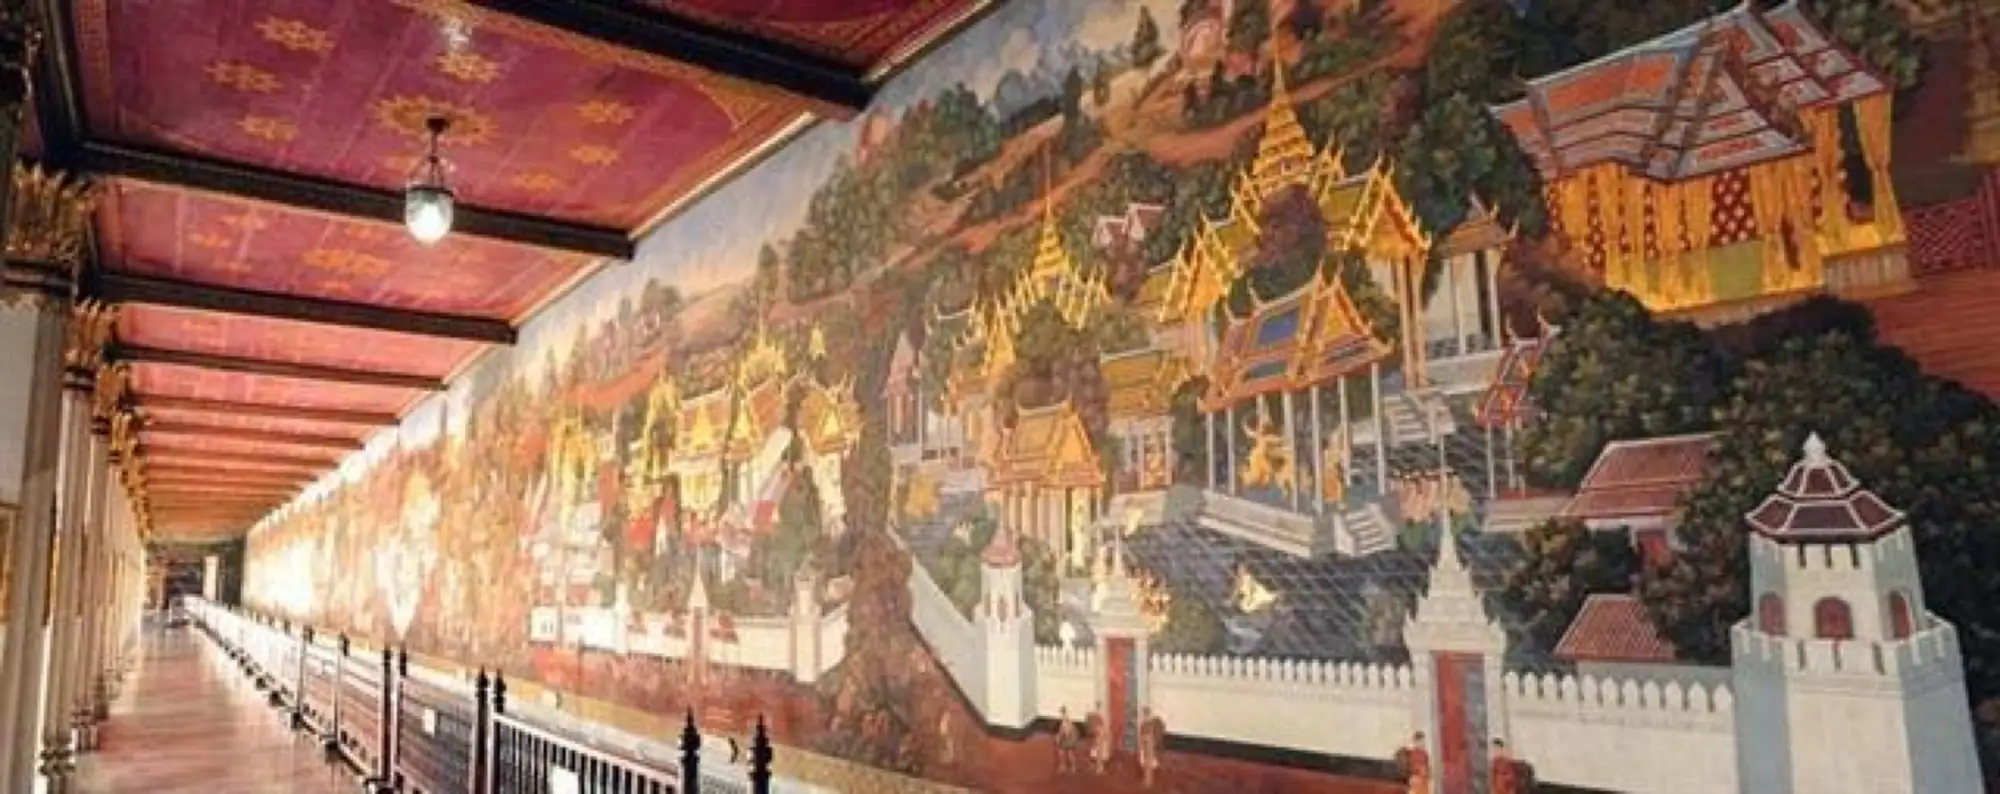 来到泰国玉佛寺肯定要欣赏世界上最长的壁画(图片Tamroitawan)